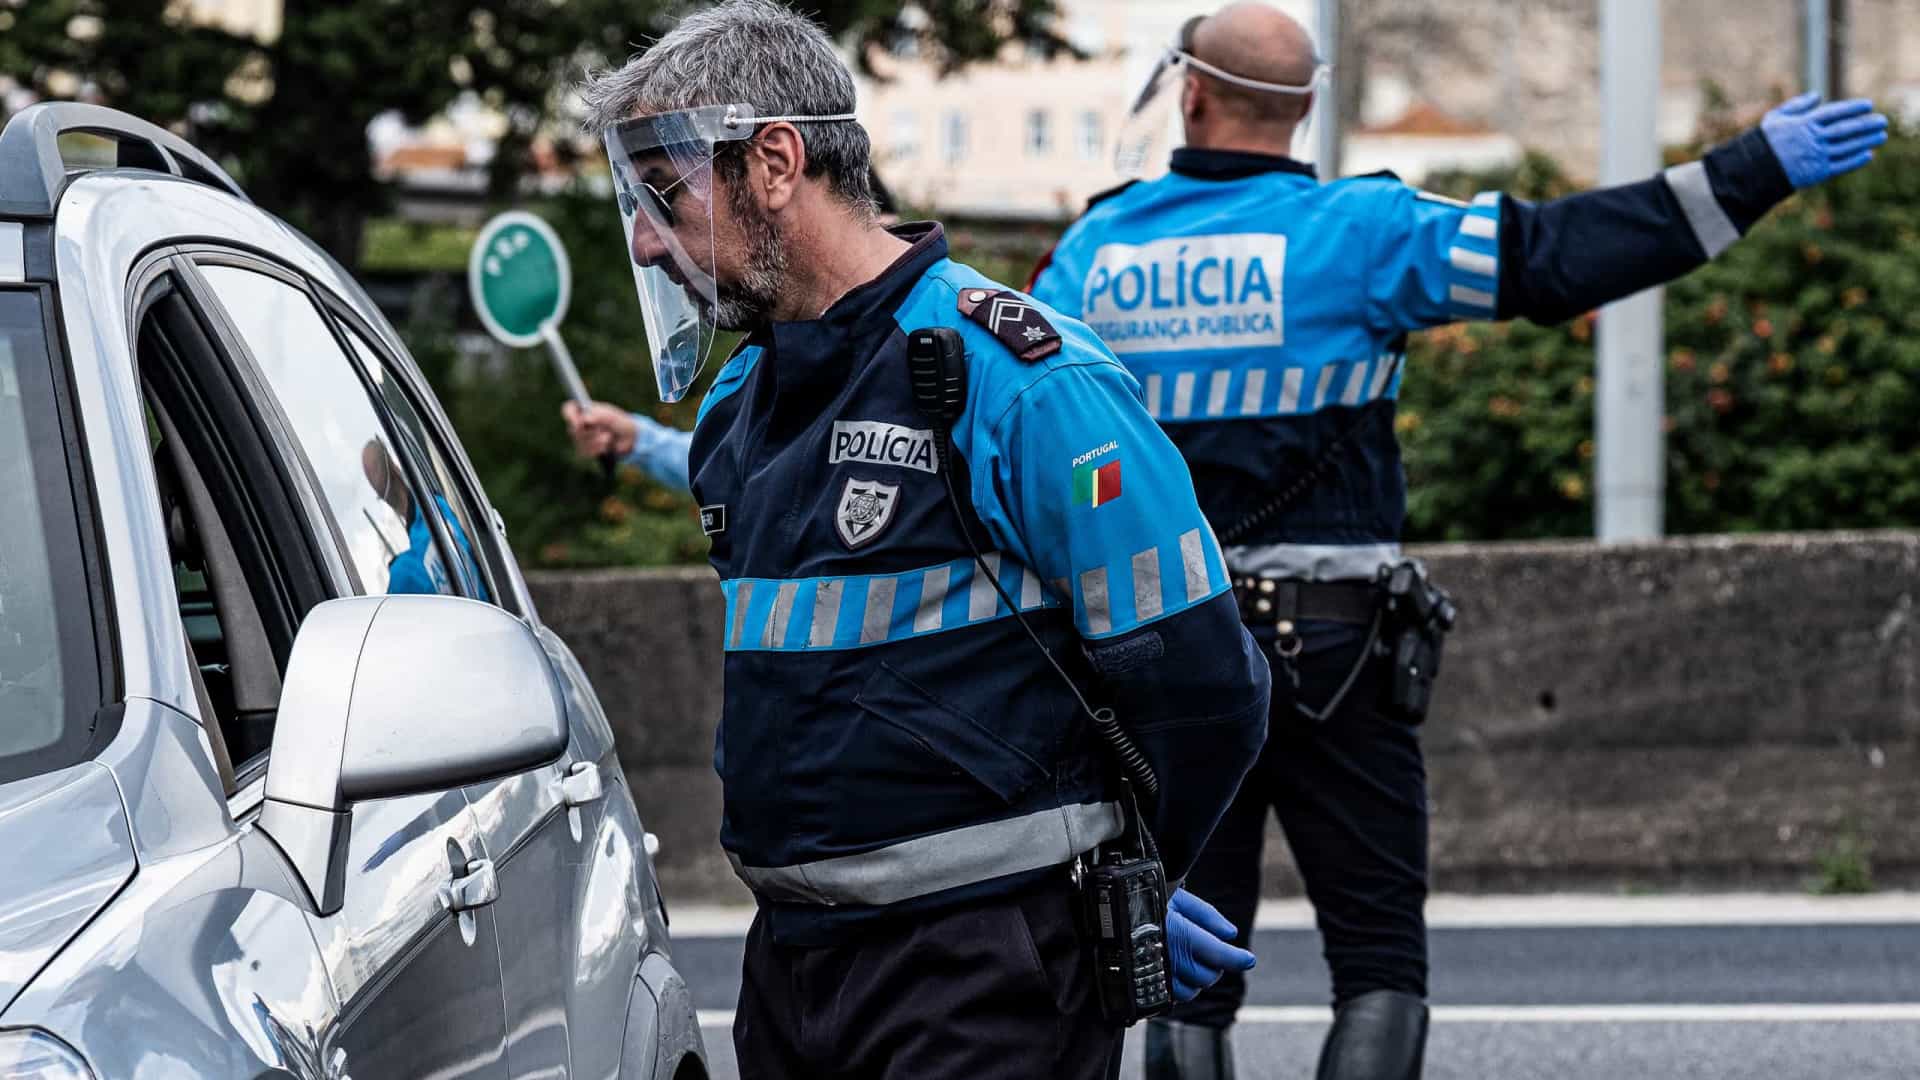 SANTARÉM – PSP confirma doze pessoas detidas no distrito. Condução sem